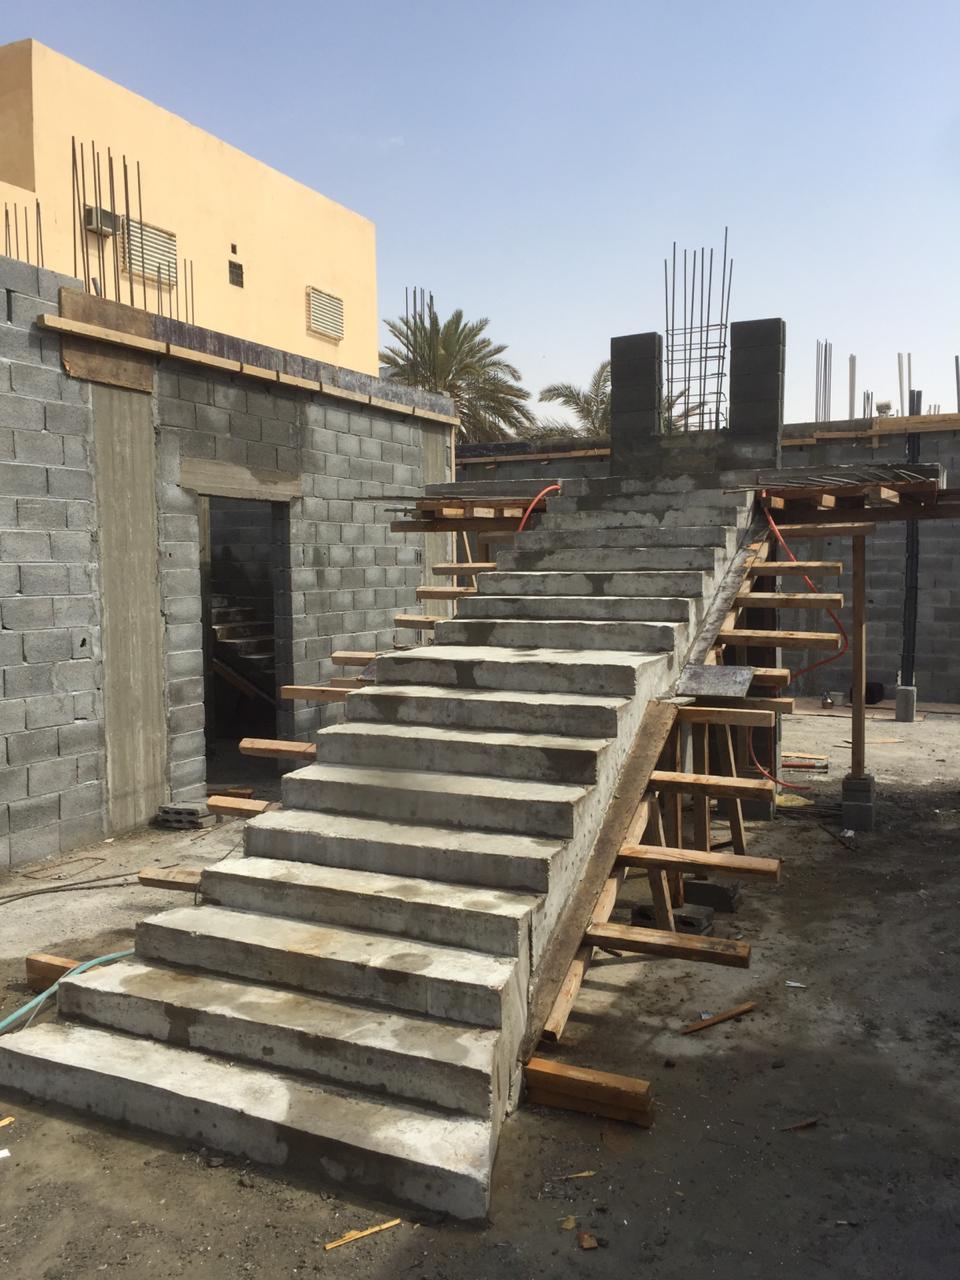 مقاول عظم في الرياض 0533266762 مقاول  بناء ملاحق بالرياض وبسعر مناسب  P_1695w9ac09